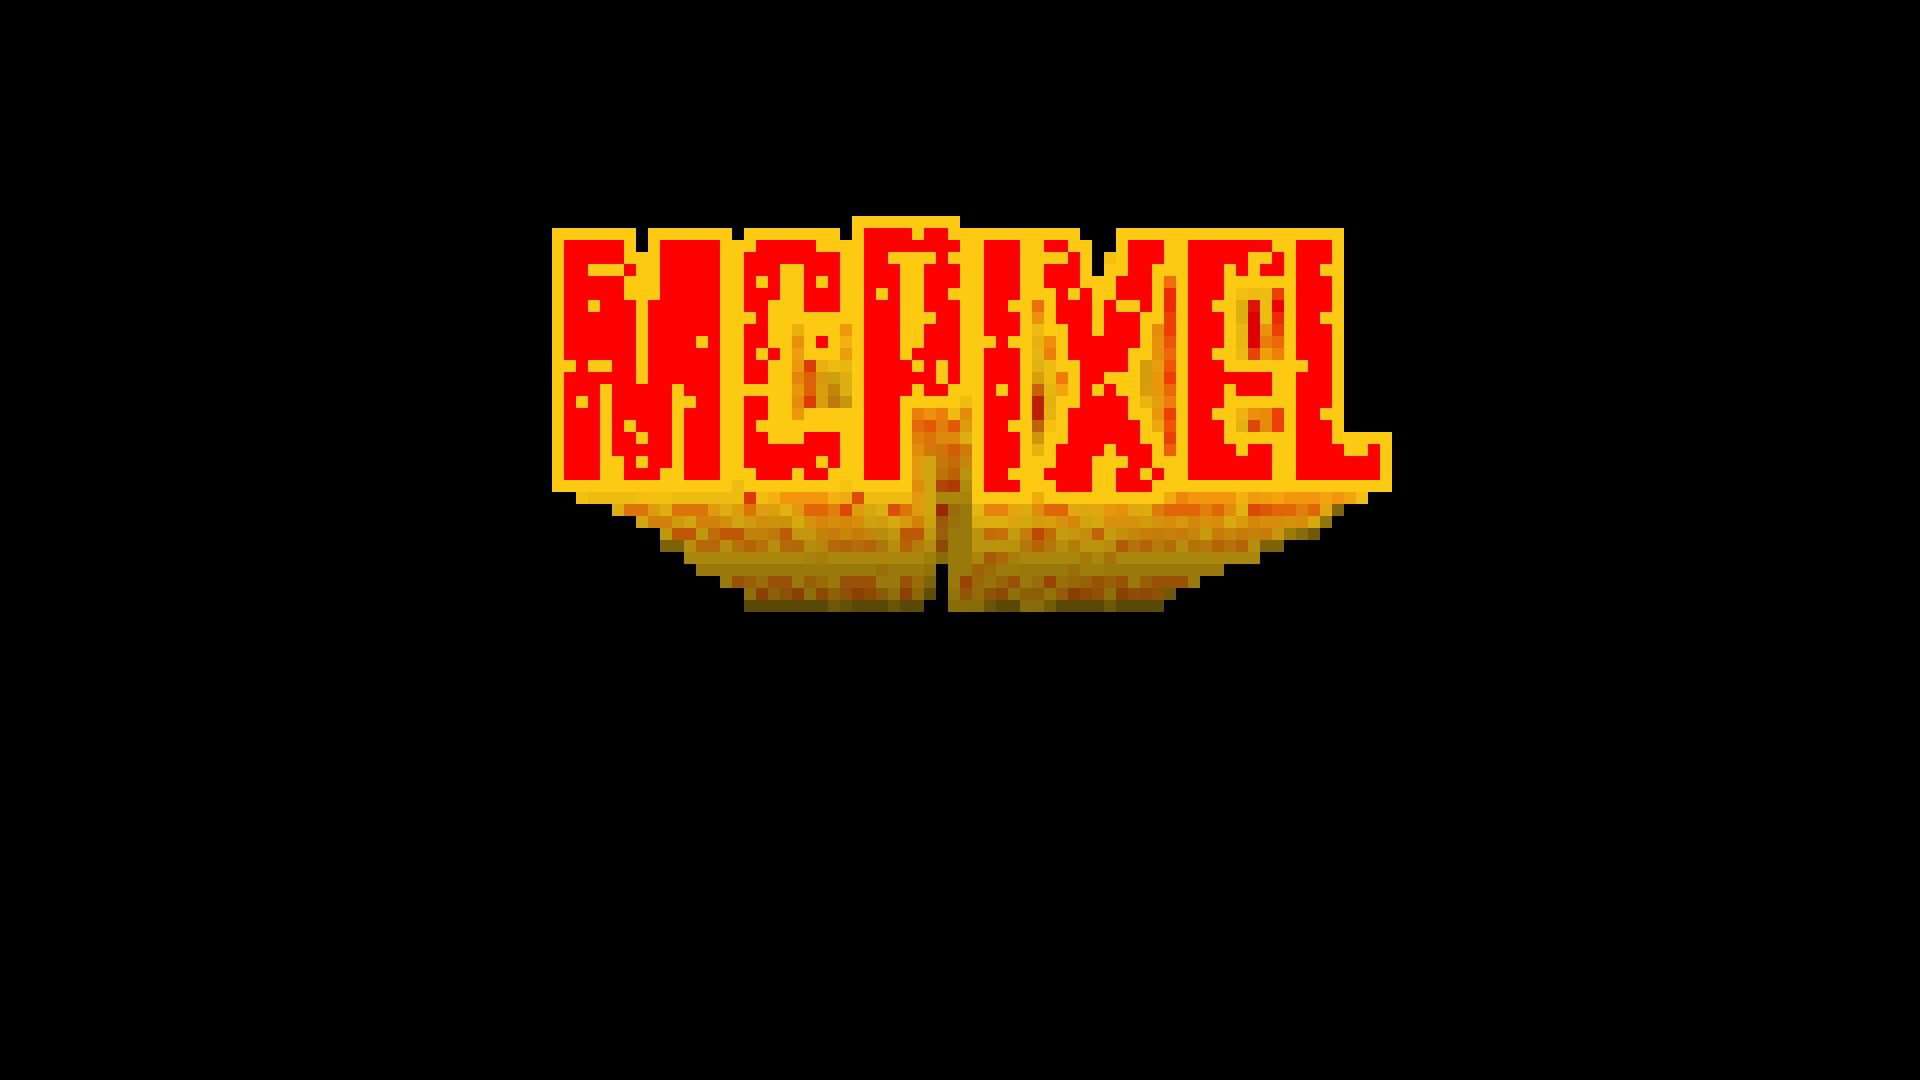 McPixel